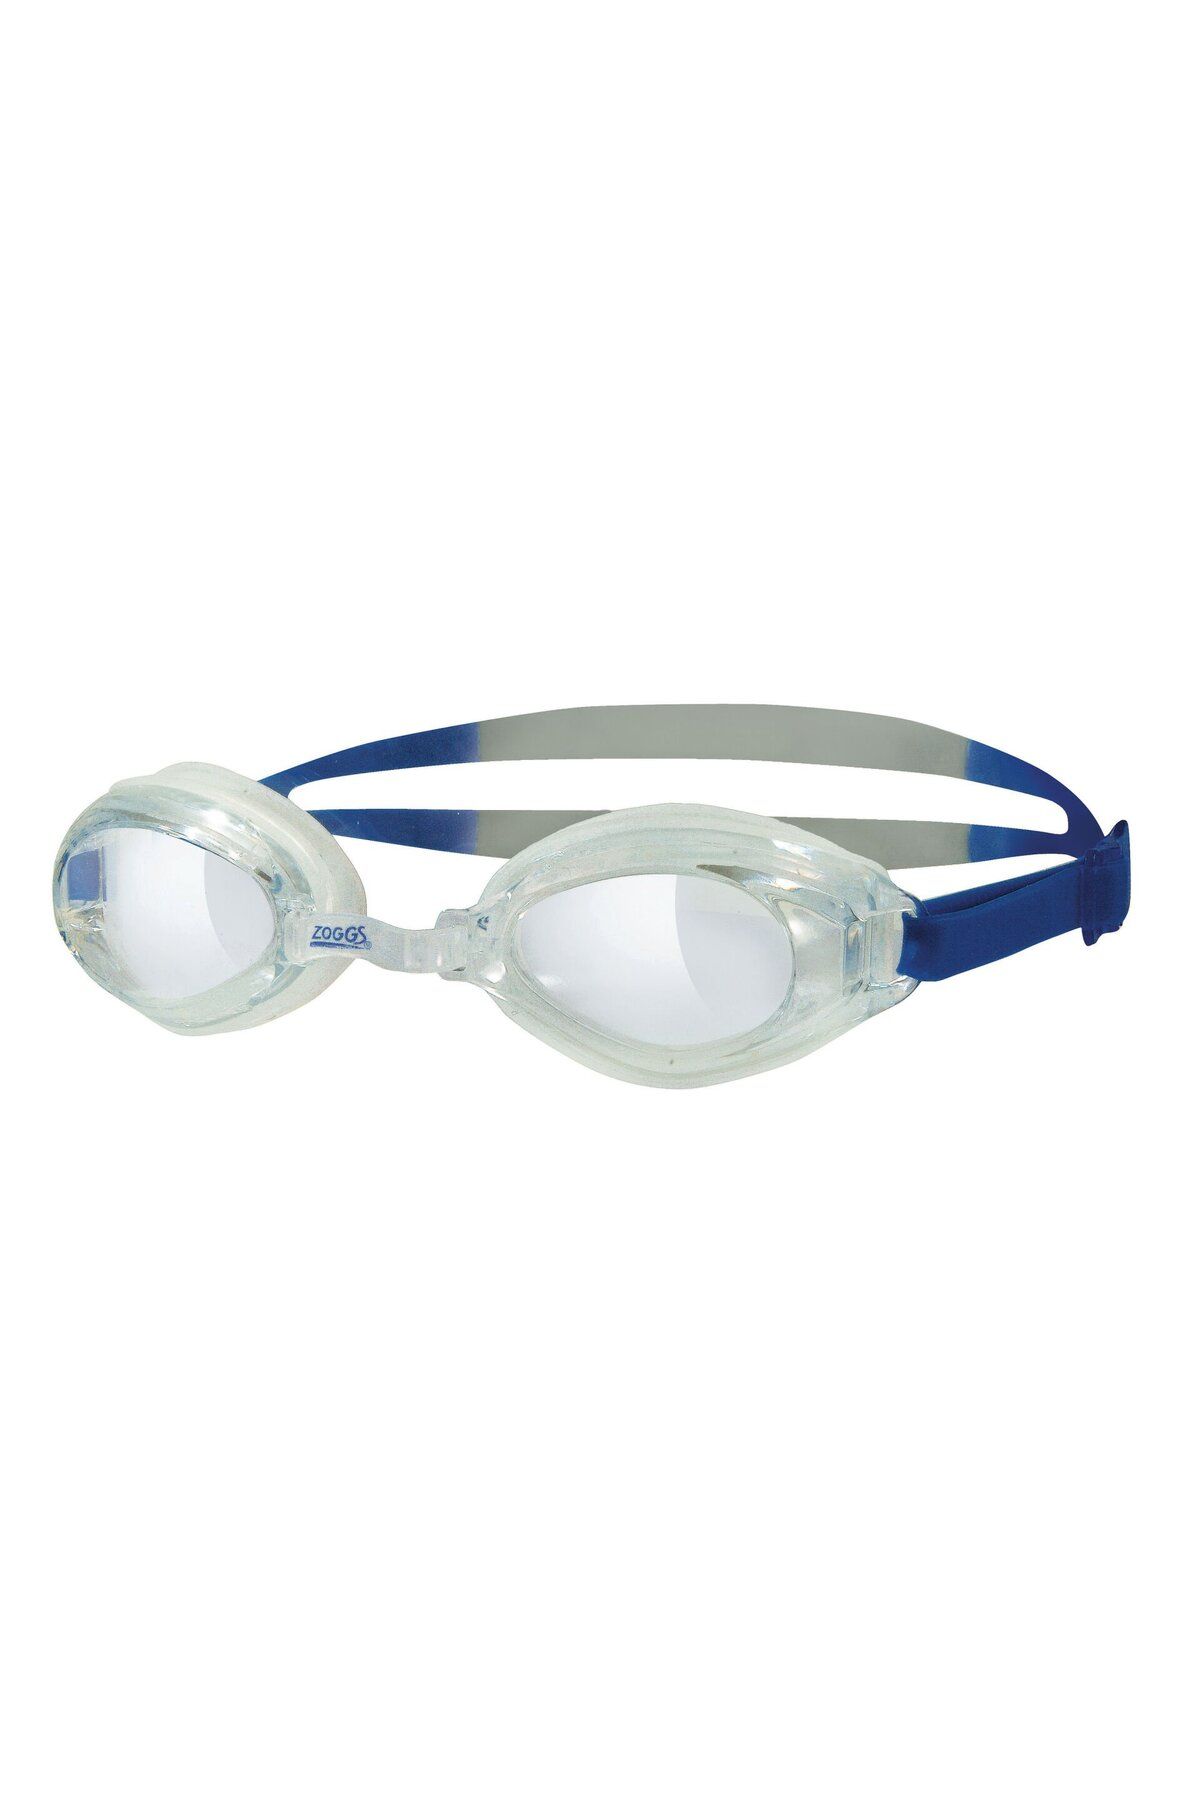 Zoggs Endura Yüzücü Gözlüğü